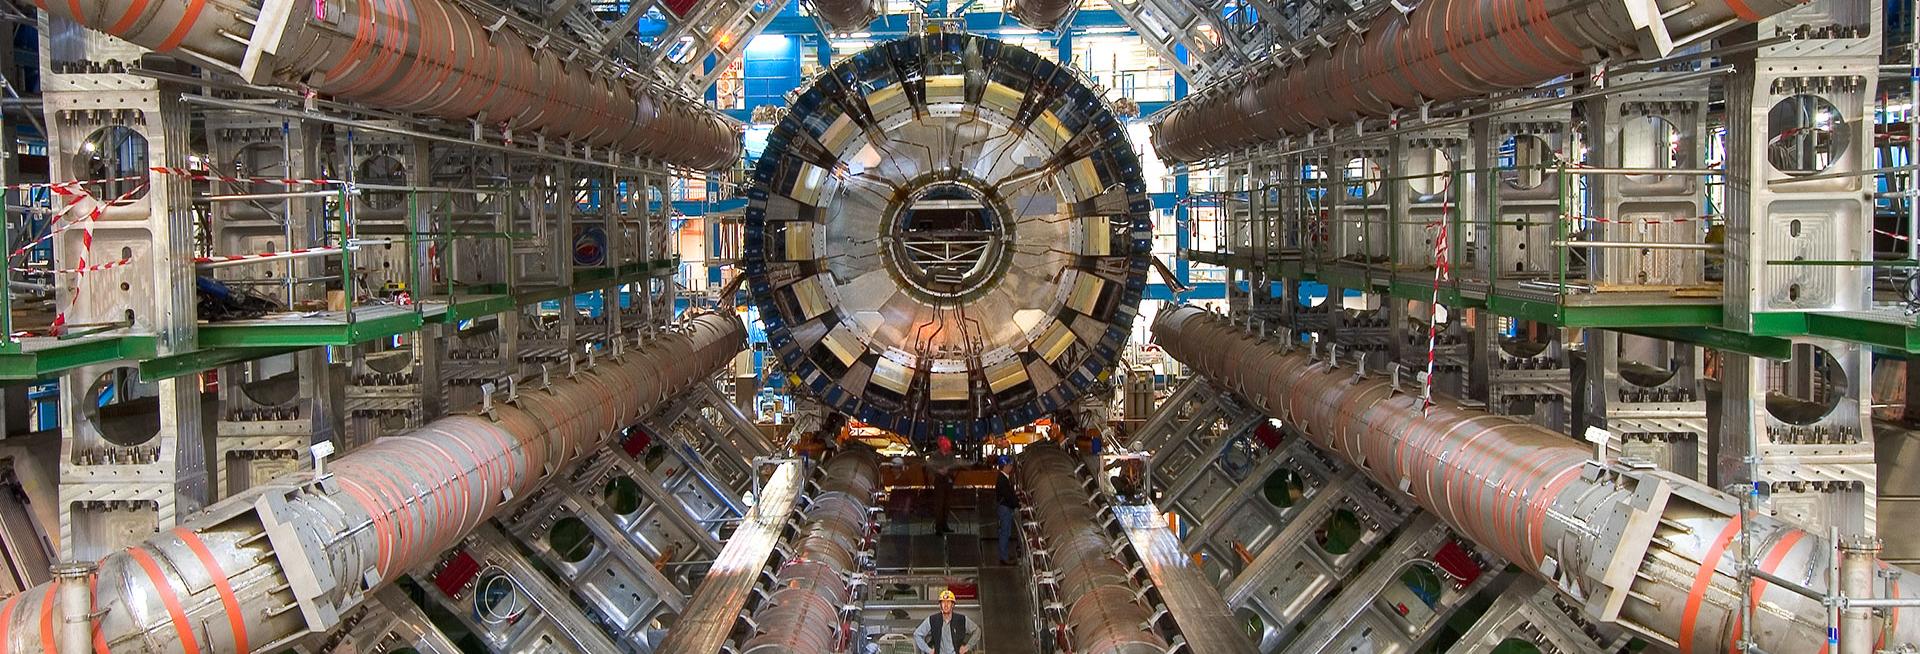 ATLAS experiment, CERN